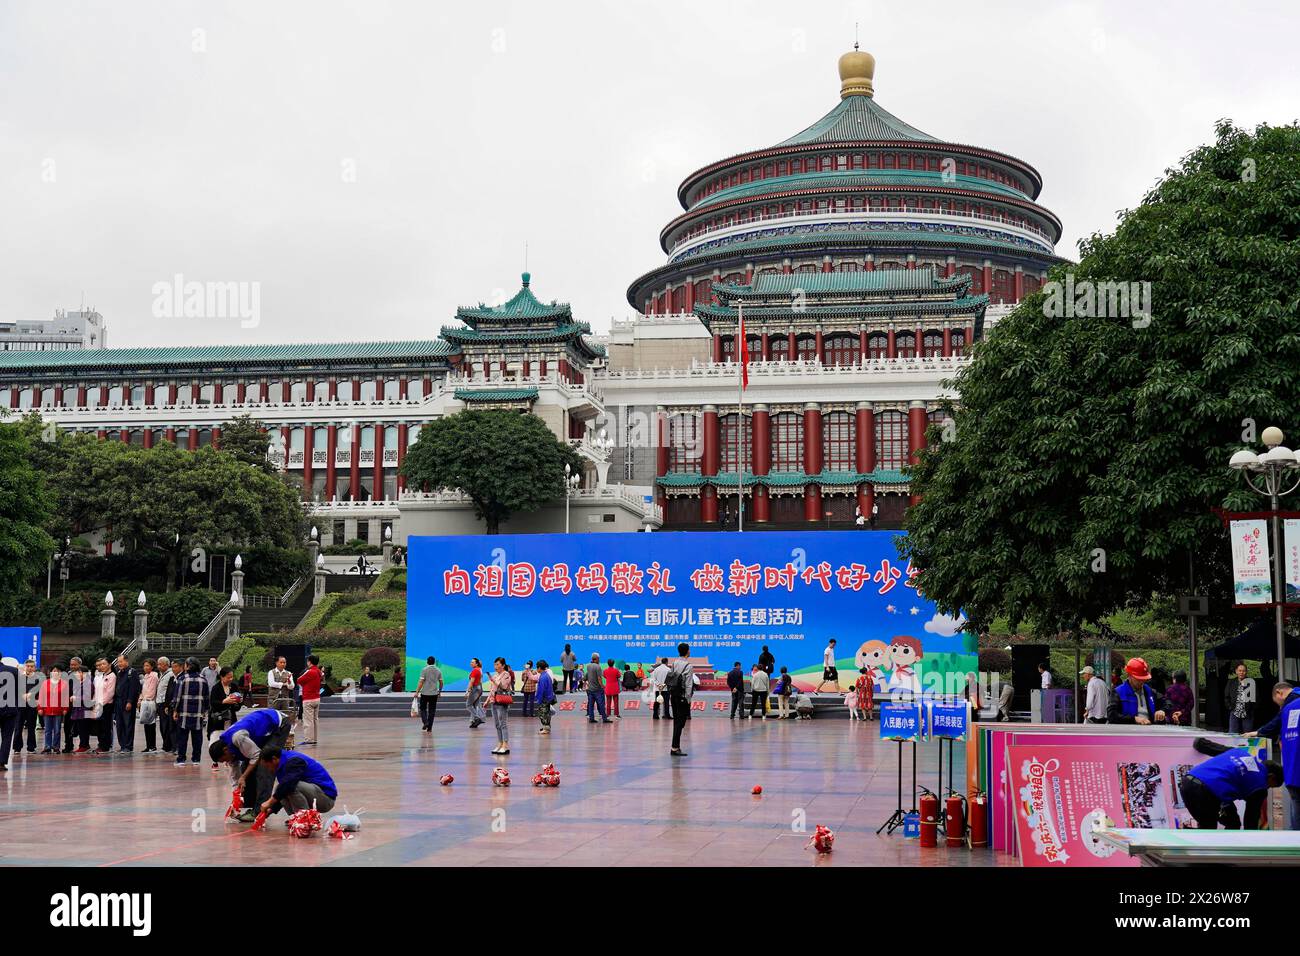 Chongqing, provincia di Chongqing, Cina, Asia, persone in una piazza con un edificio di rilievo sullo sfondo di un evento culturale Foto Stock